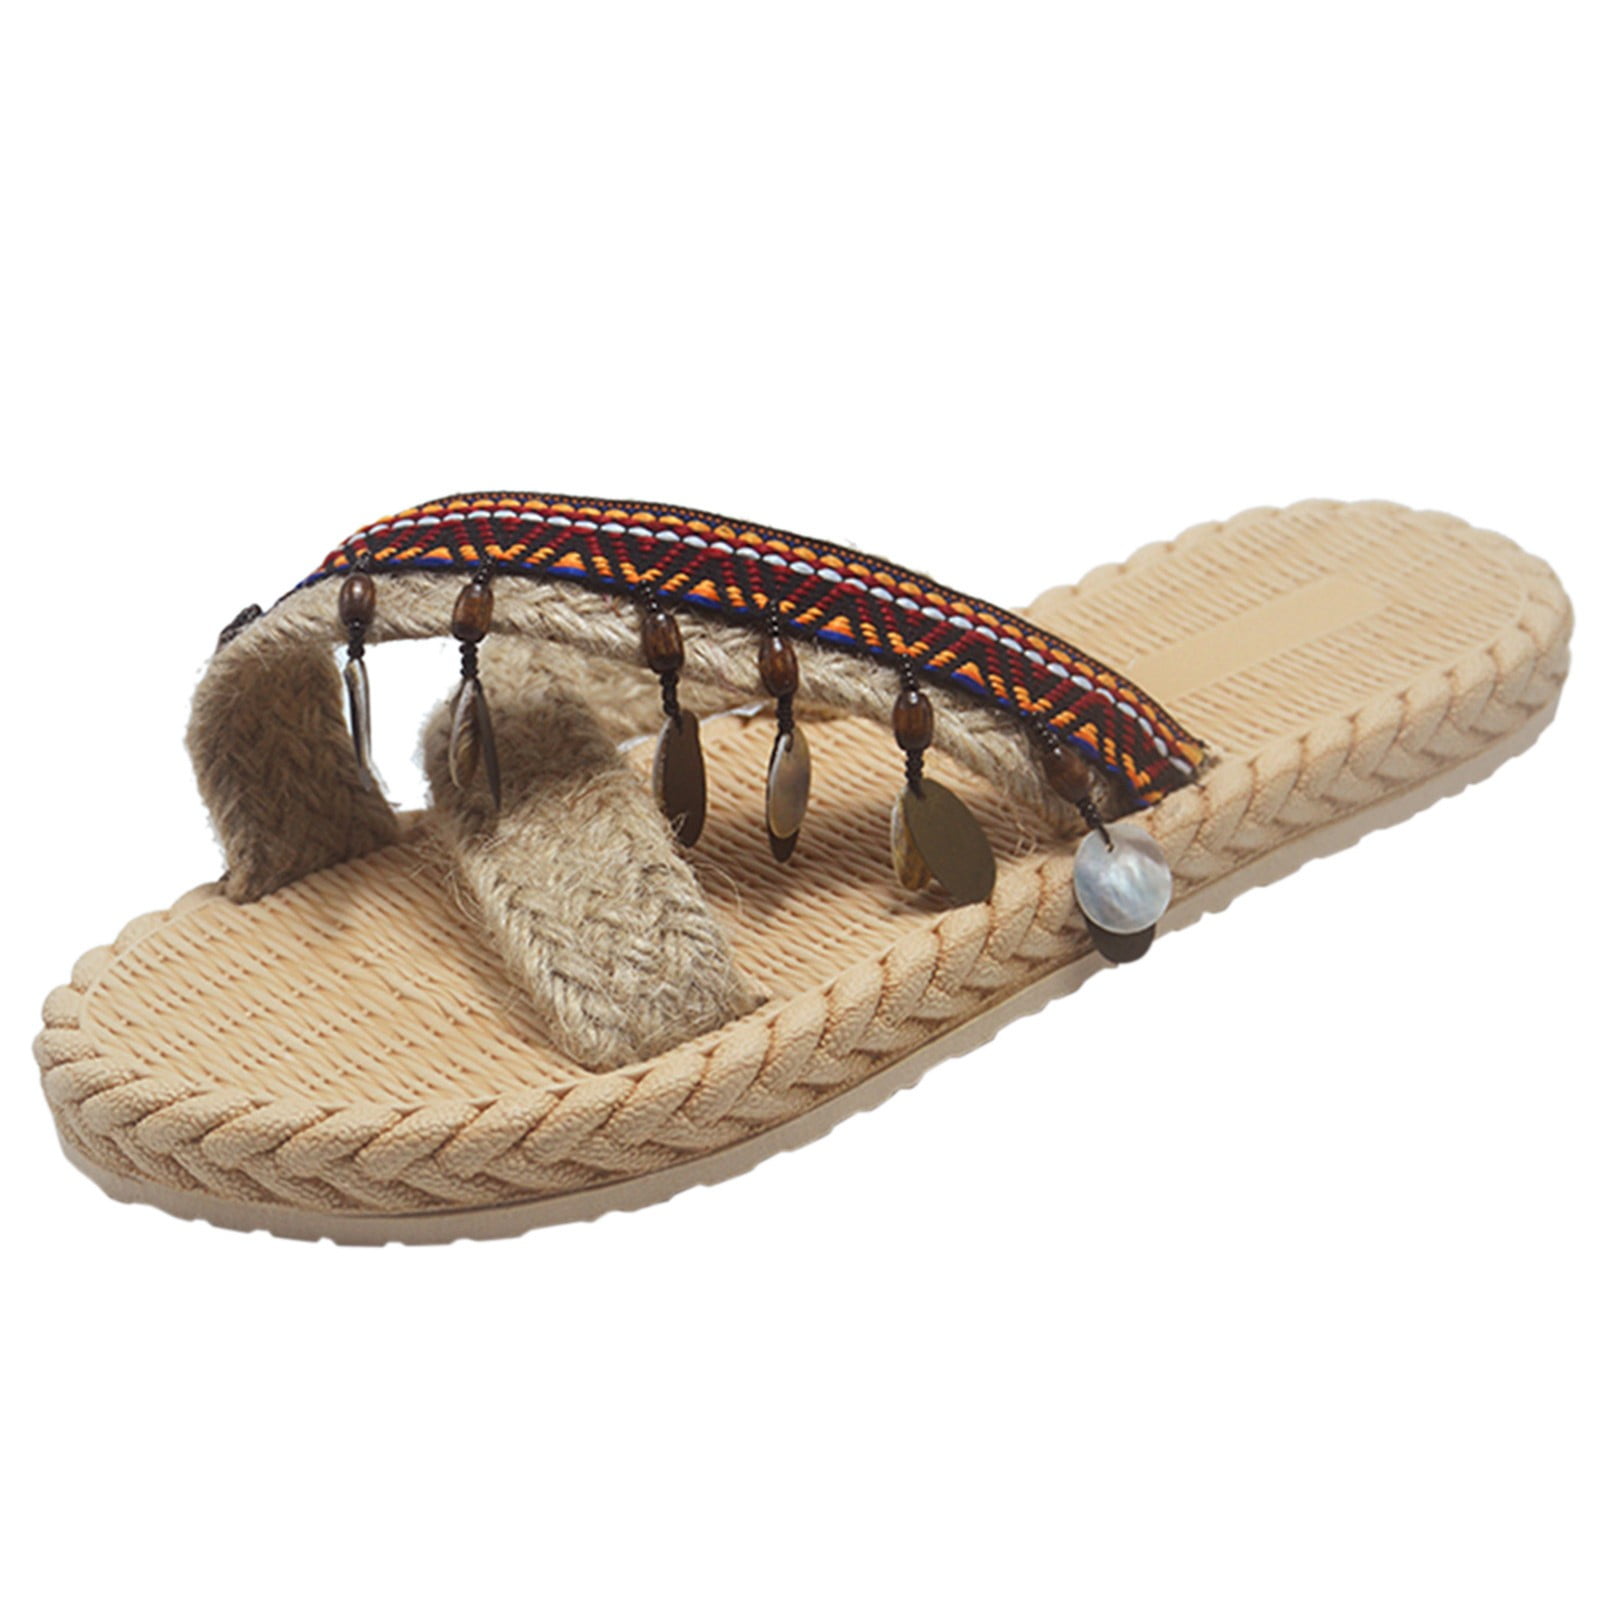 Summer Straw Braid Women's Platform Sandals Flip Flops Beach Slipper Wedge Shoes 